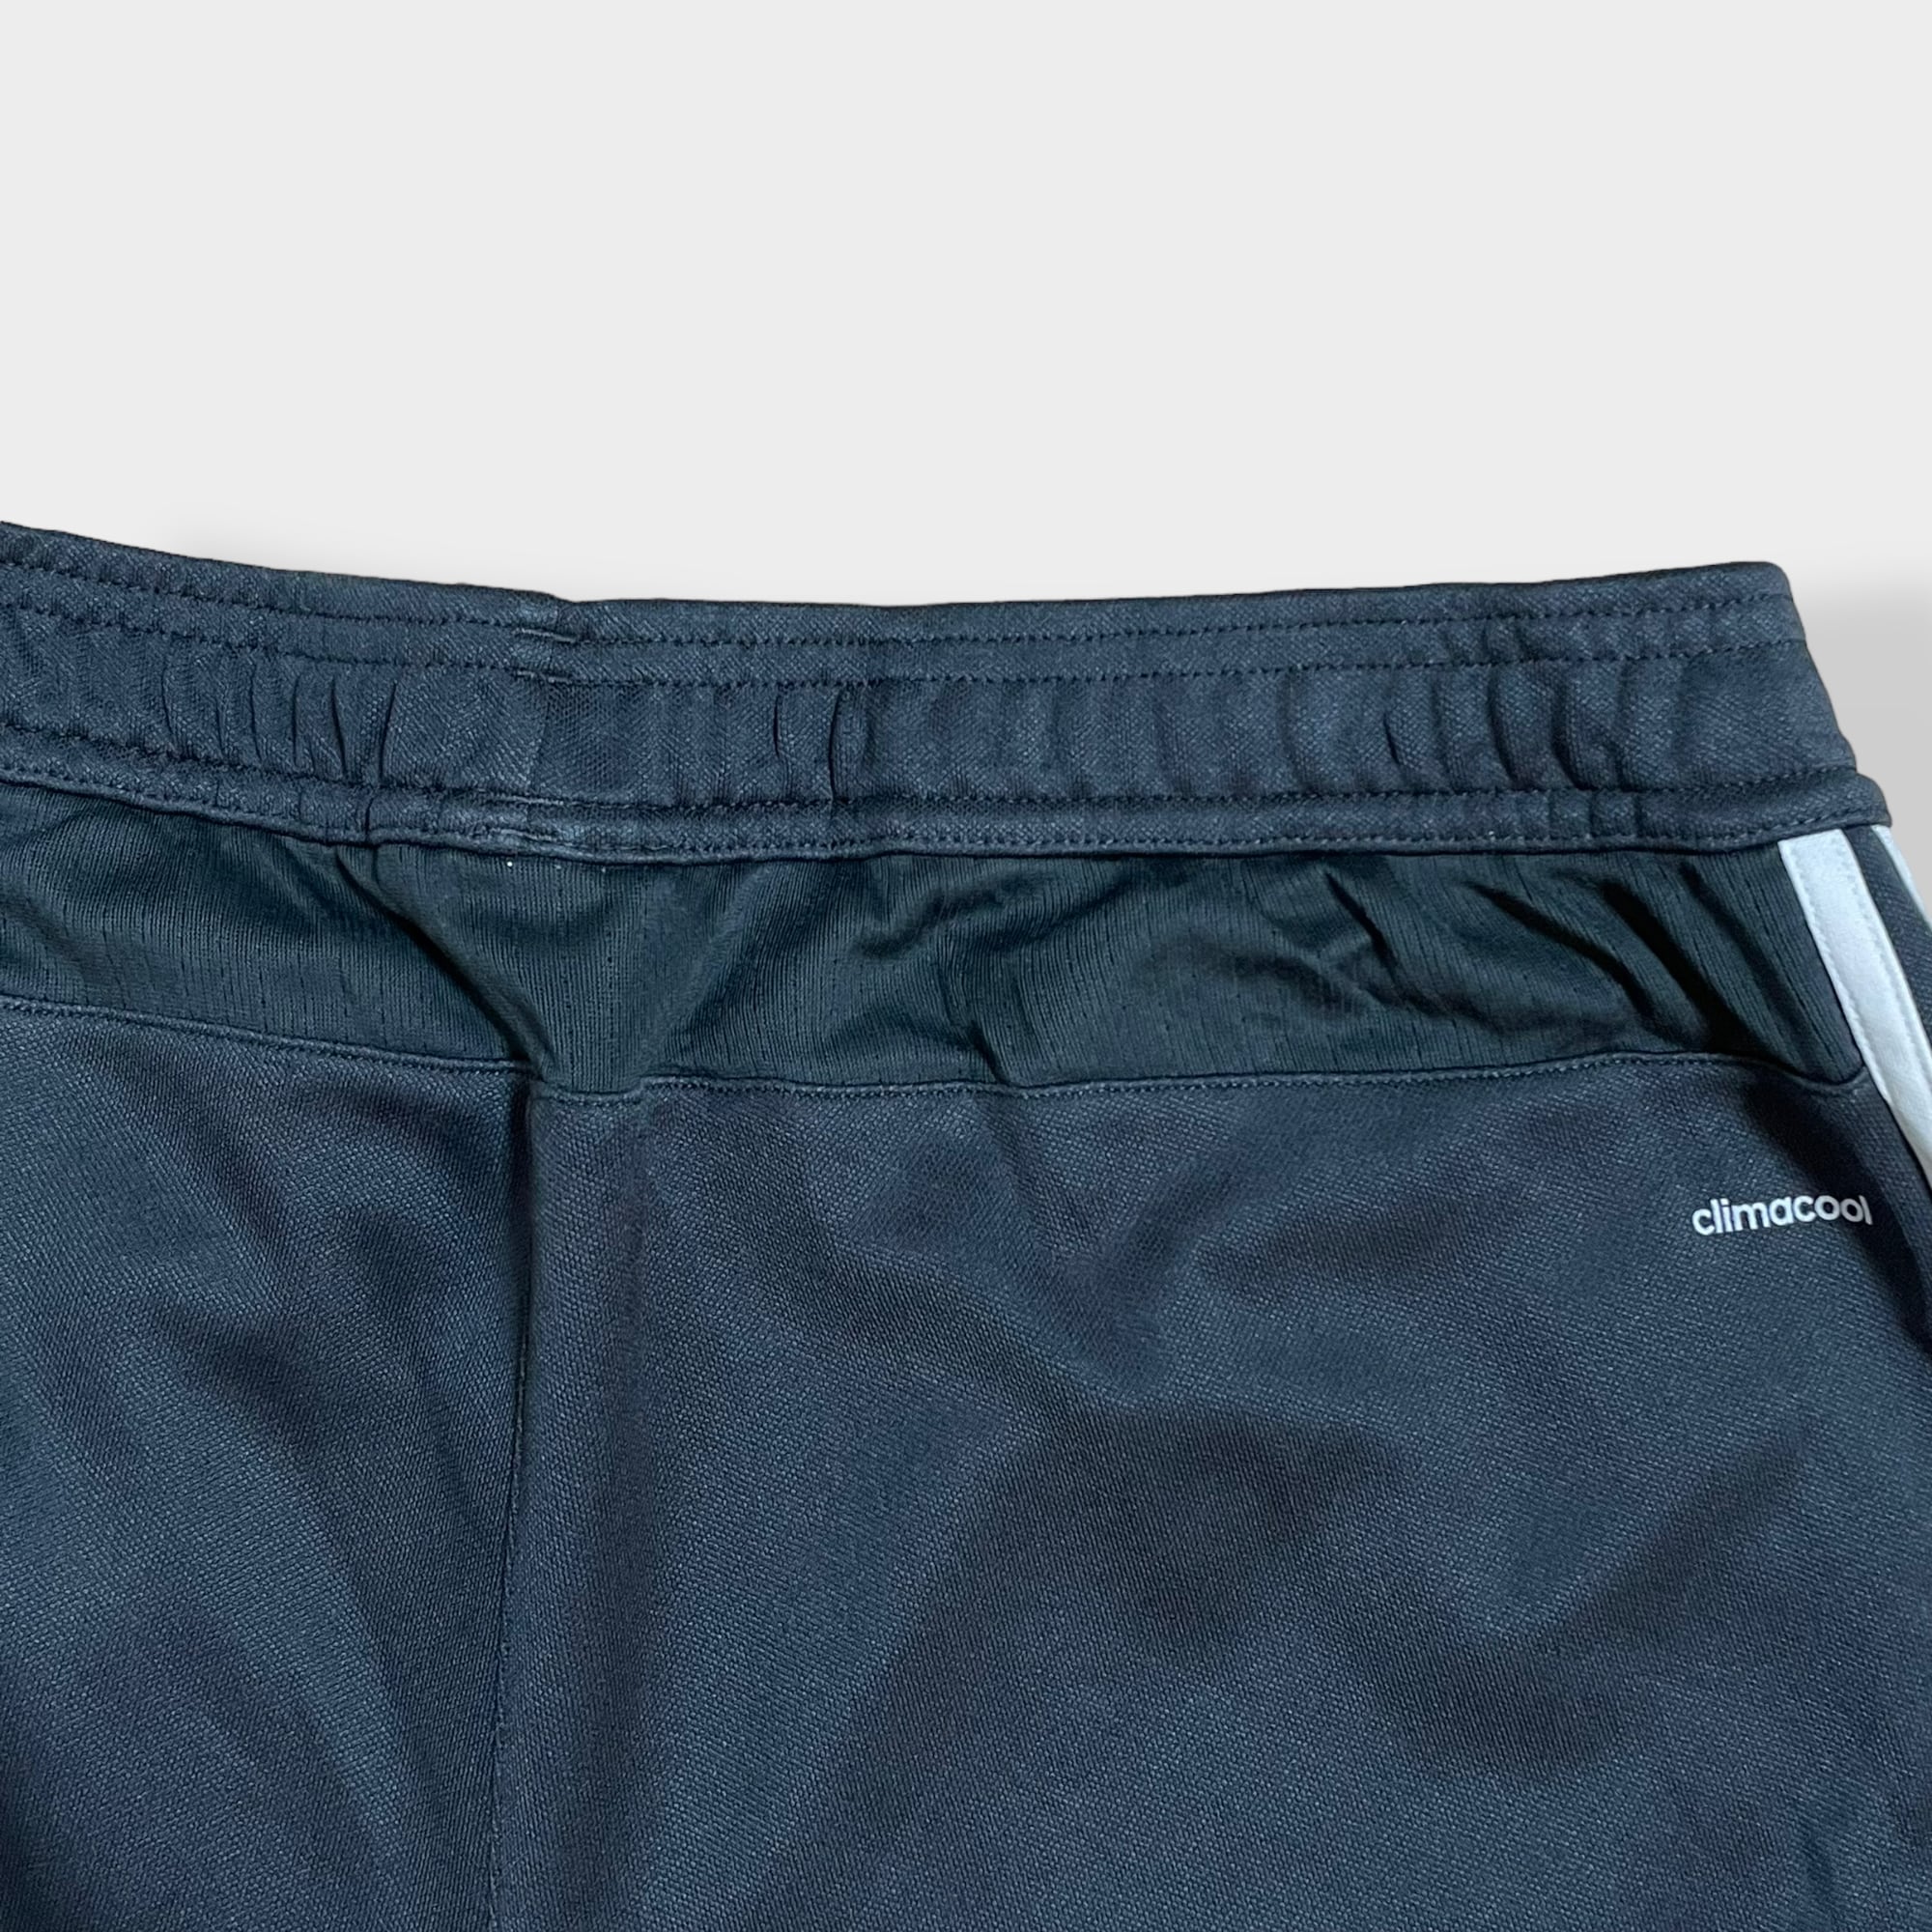 adidas】トラックパンツ TRACK PANTS サッカー フットサル ジャージ